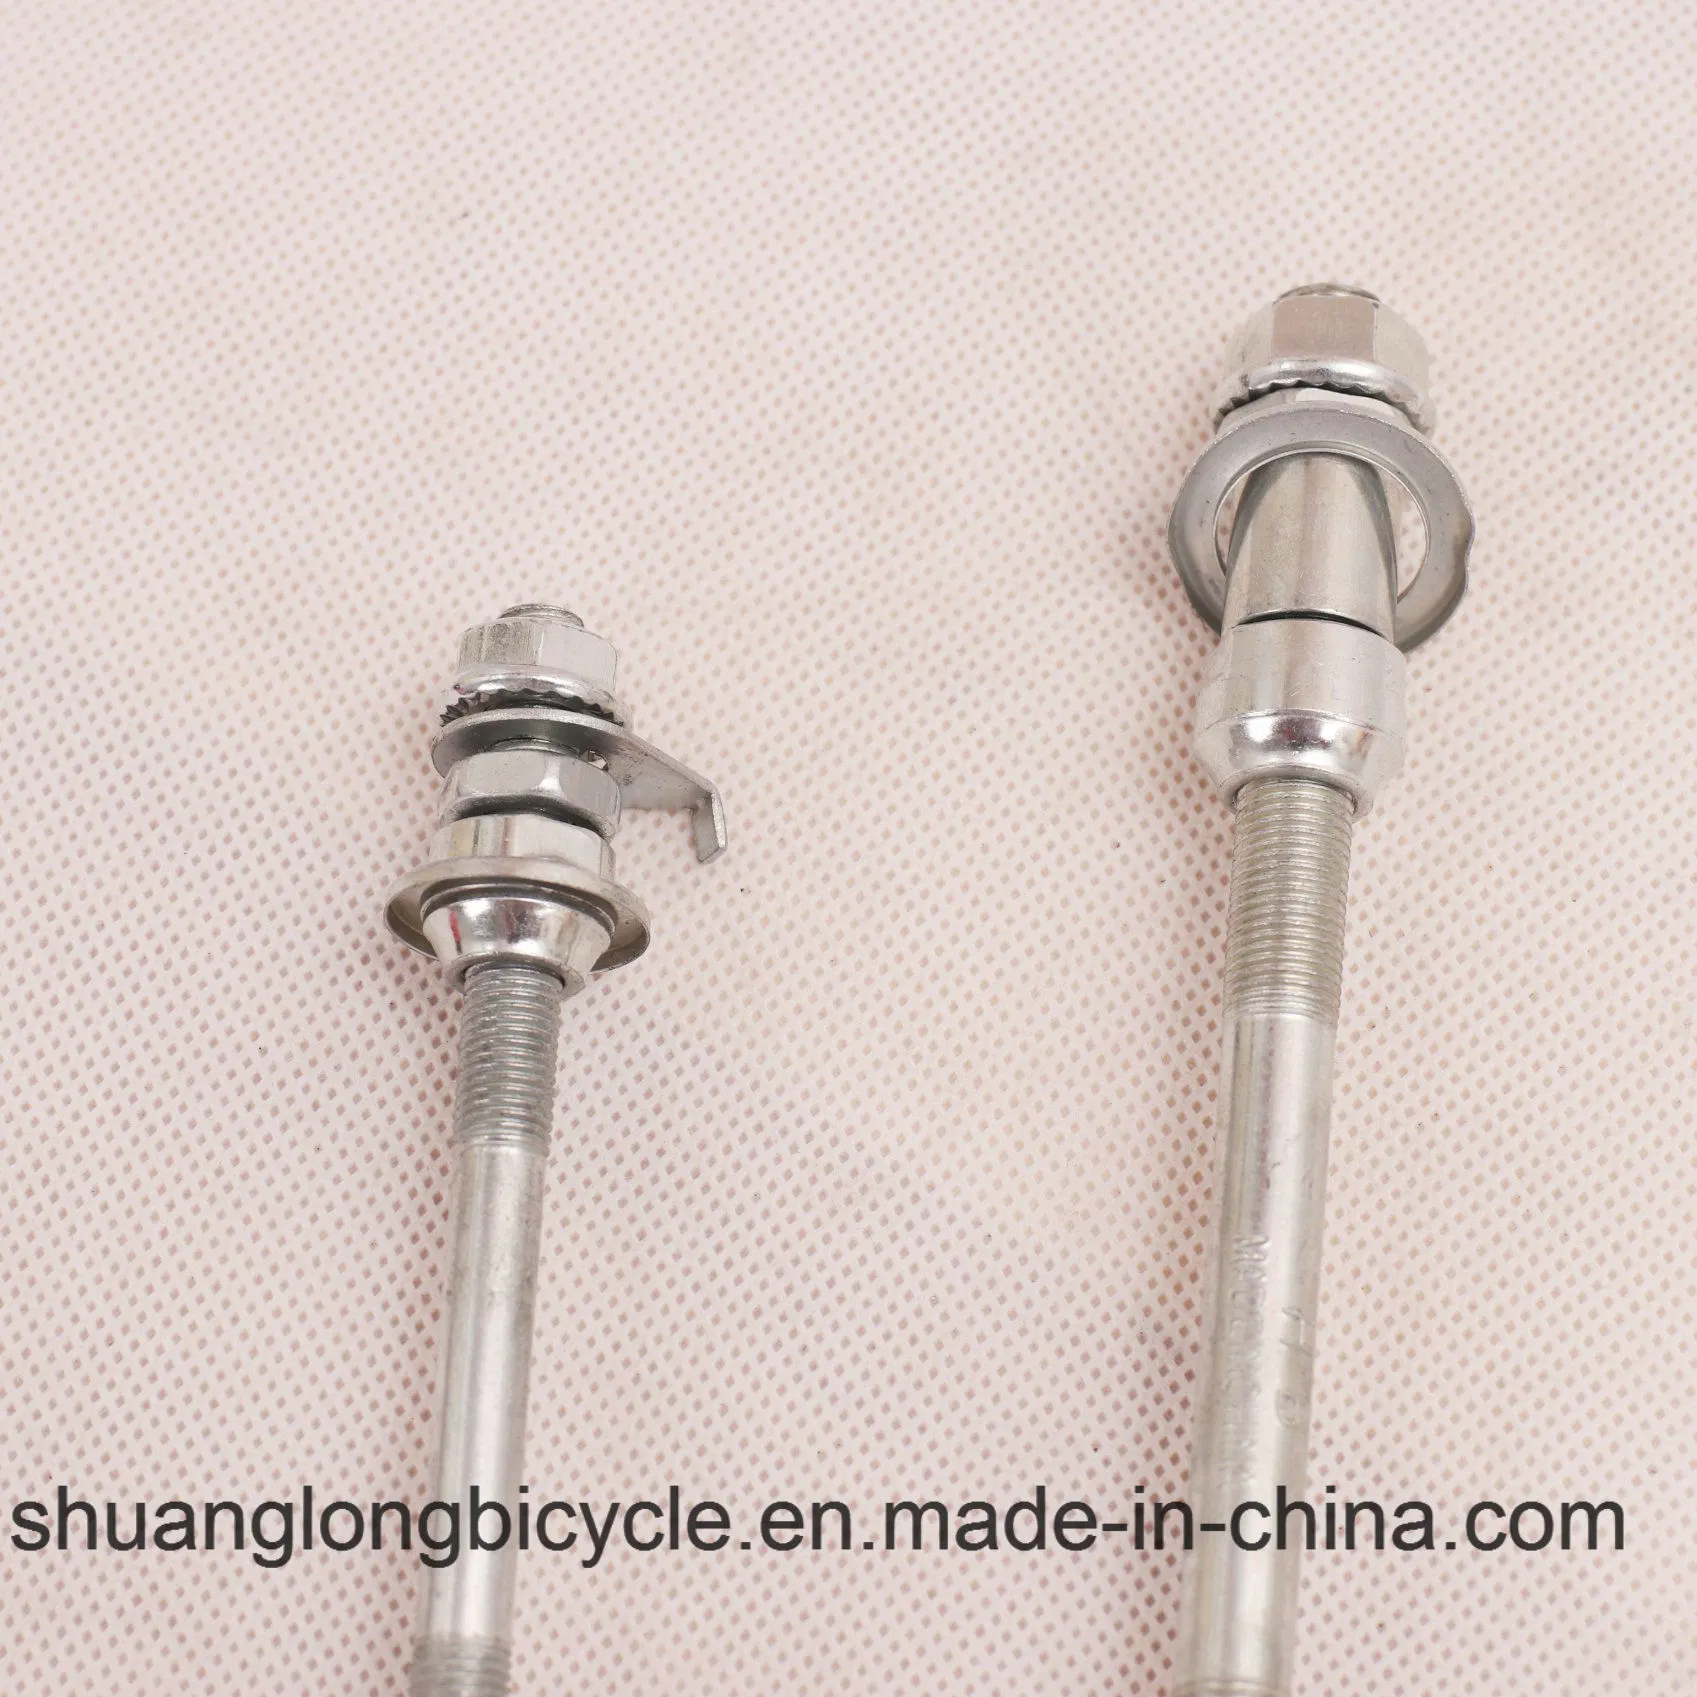 Стальной материал с проставкой Передний или задний велосипедный мост/шпиндель включен Различные запчасти для велосипедов